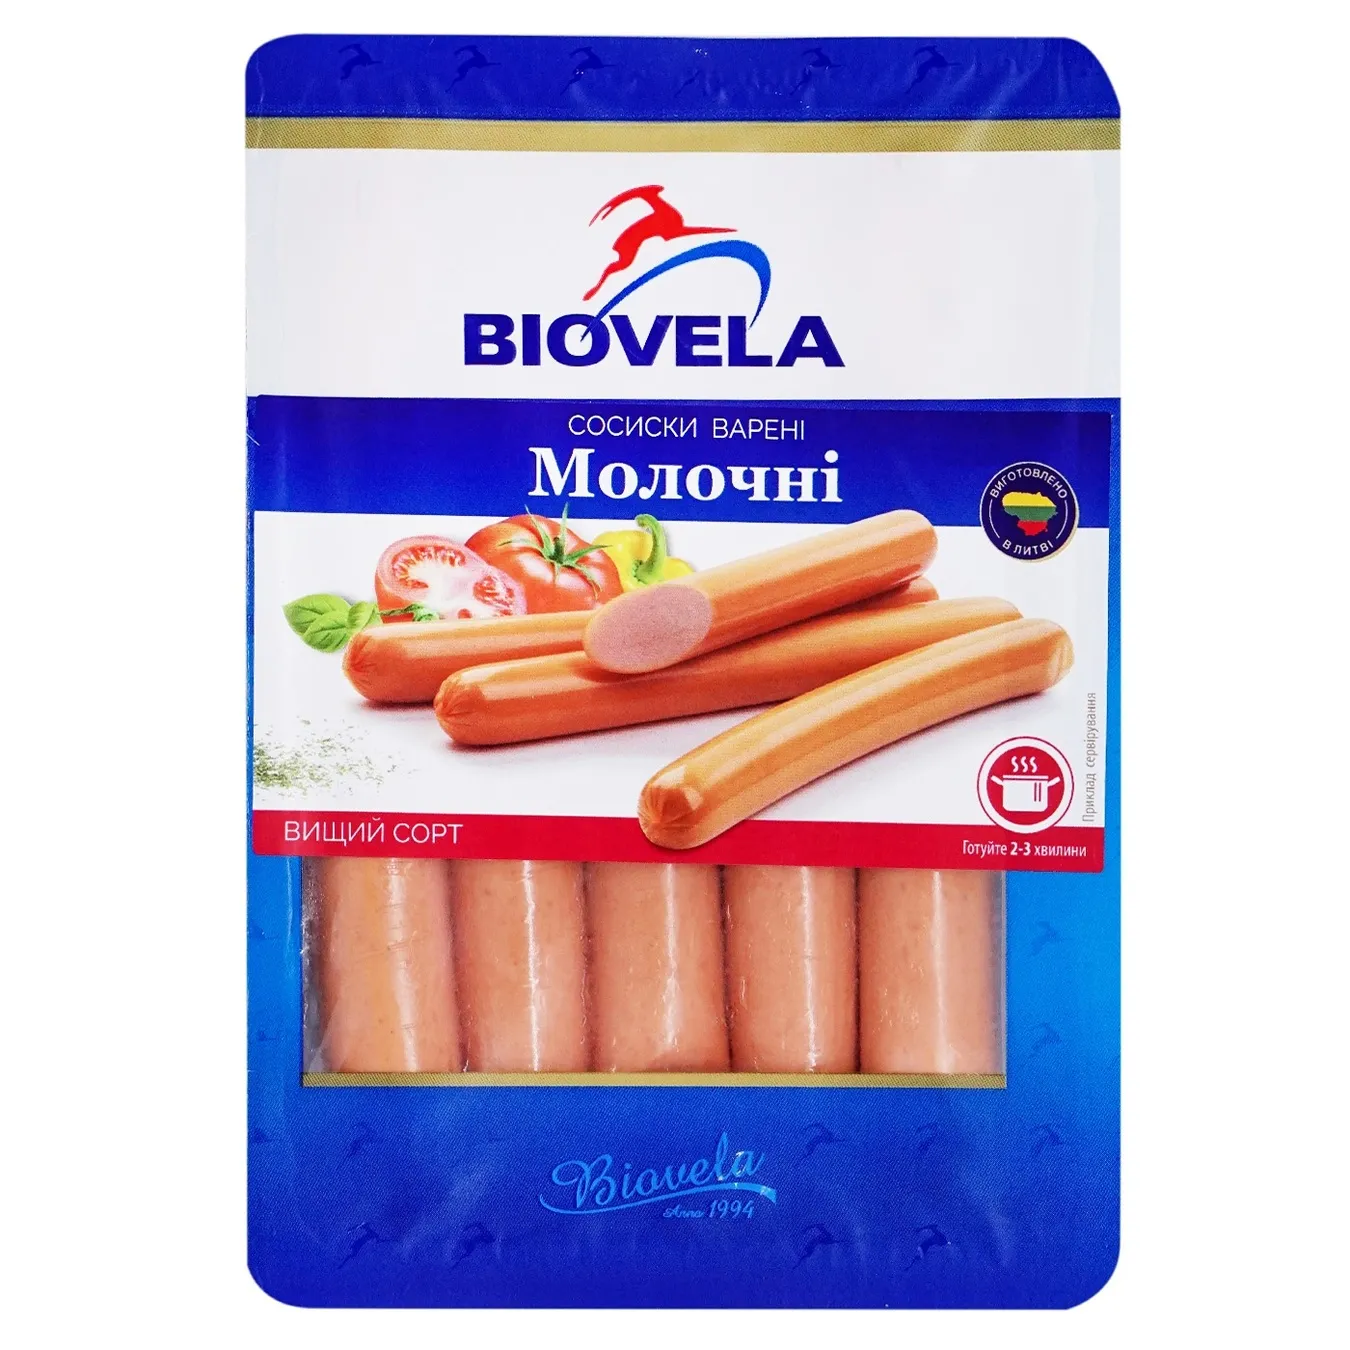 Boiled Biovela milk sausages 260g